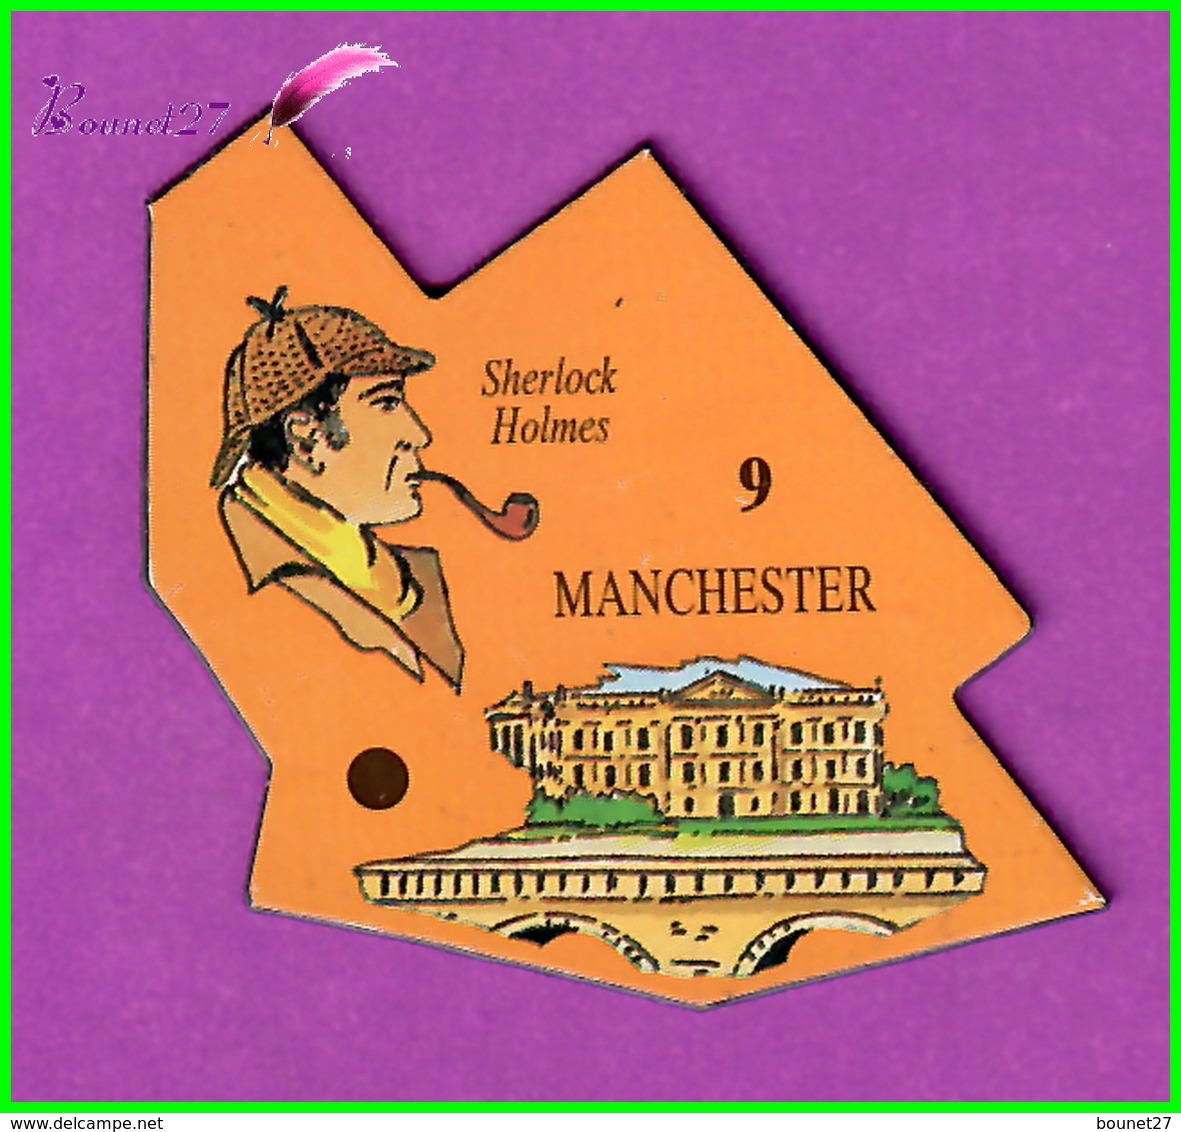 Magnet Le Gaulois Les Ville Du Monde N° 9 MANCHESTER Angleterre Sherlock Holmes - Magnets